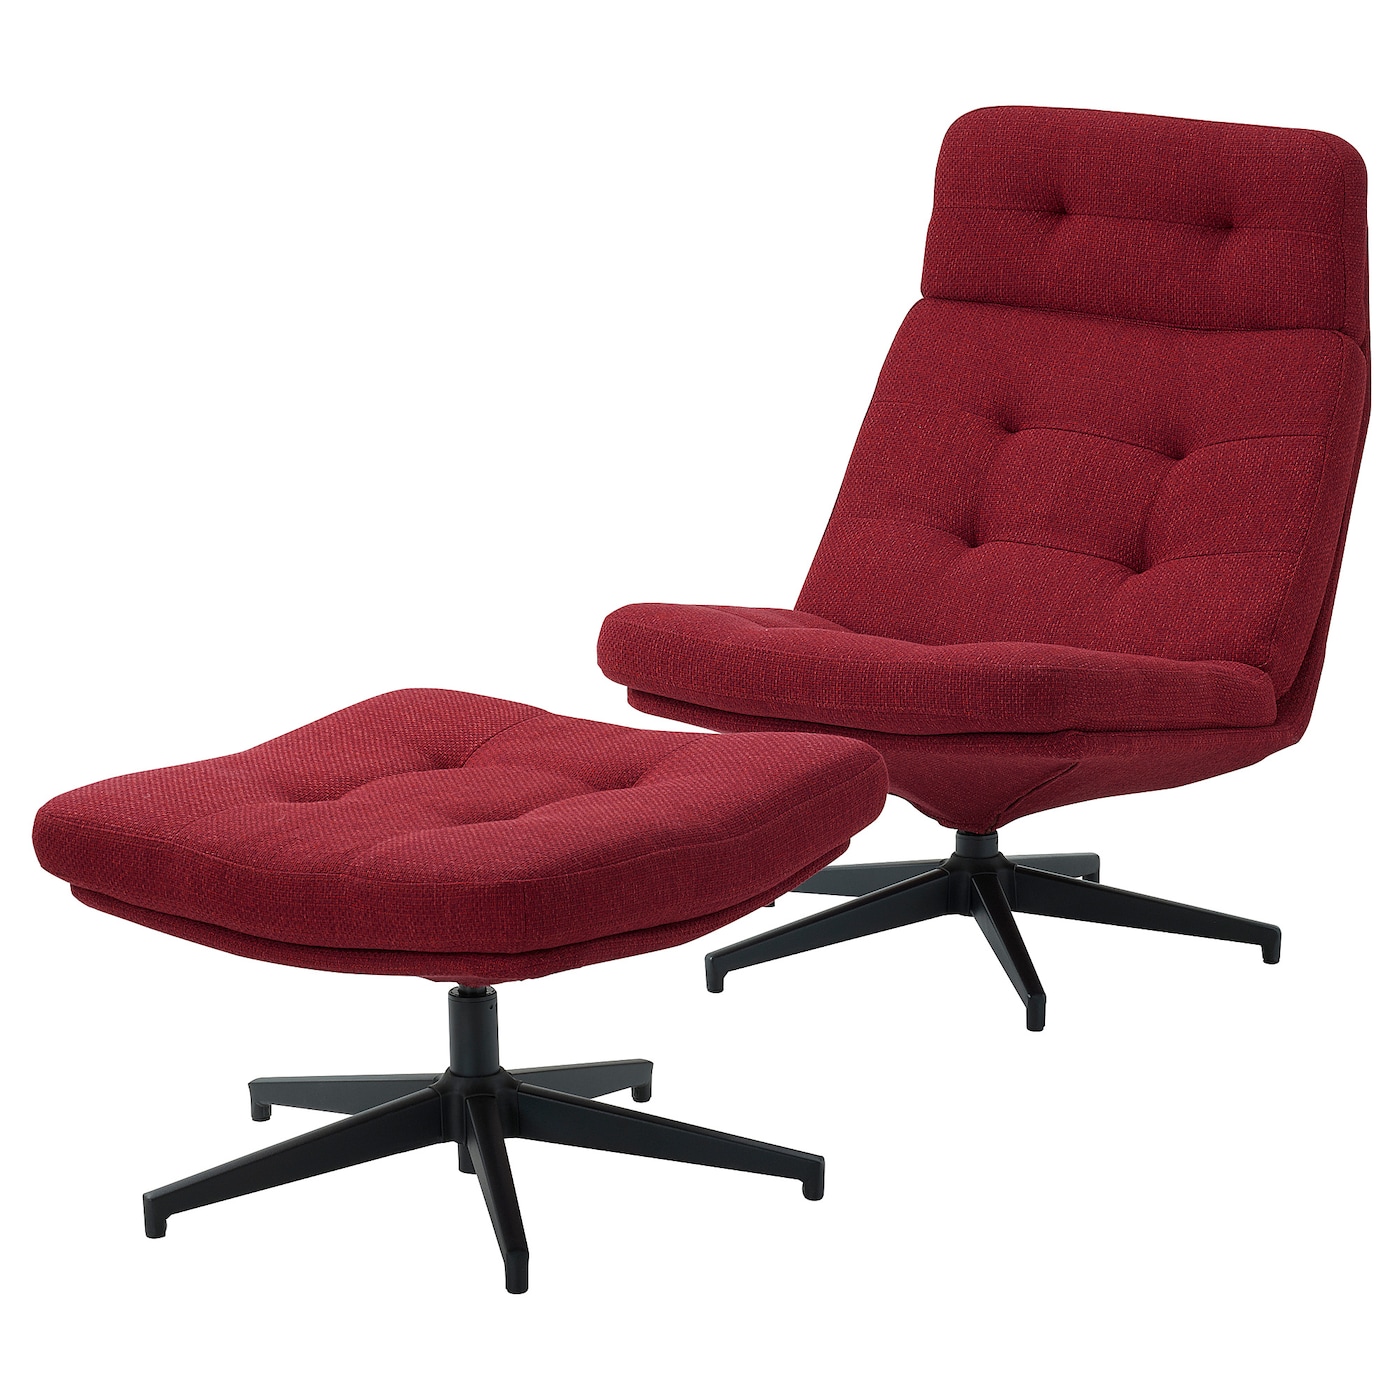 ХАВБЕРГ Кресло и подставка для ног, Лейде красный/коричневый HAVBERG IKEA компьютерное кресло gy офисное кресло студенческое учебное кресло подъемное небольшое вращающееся кресло удобное длинное сидение прост